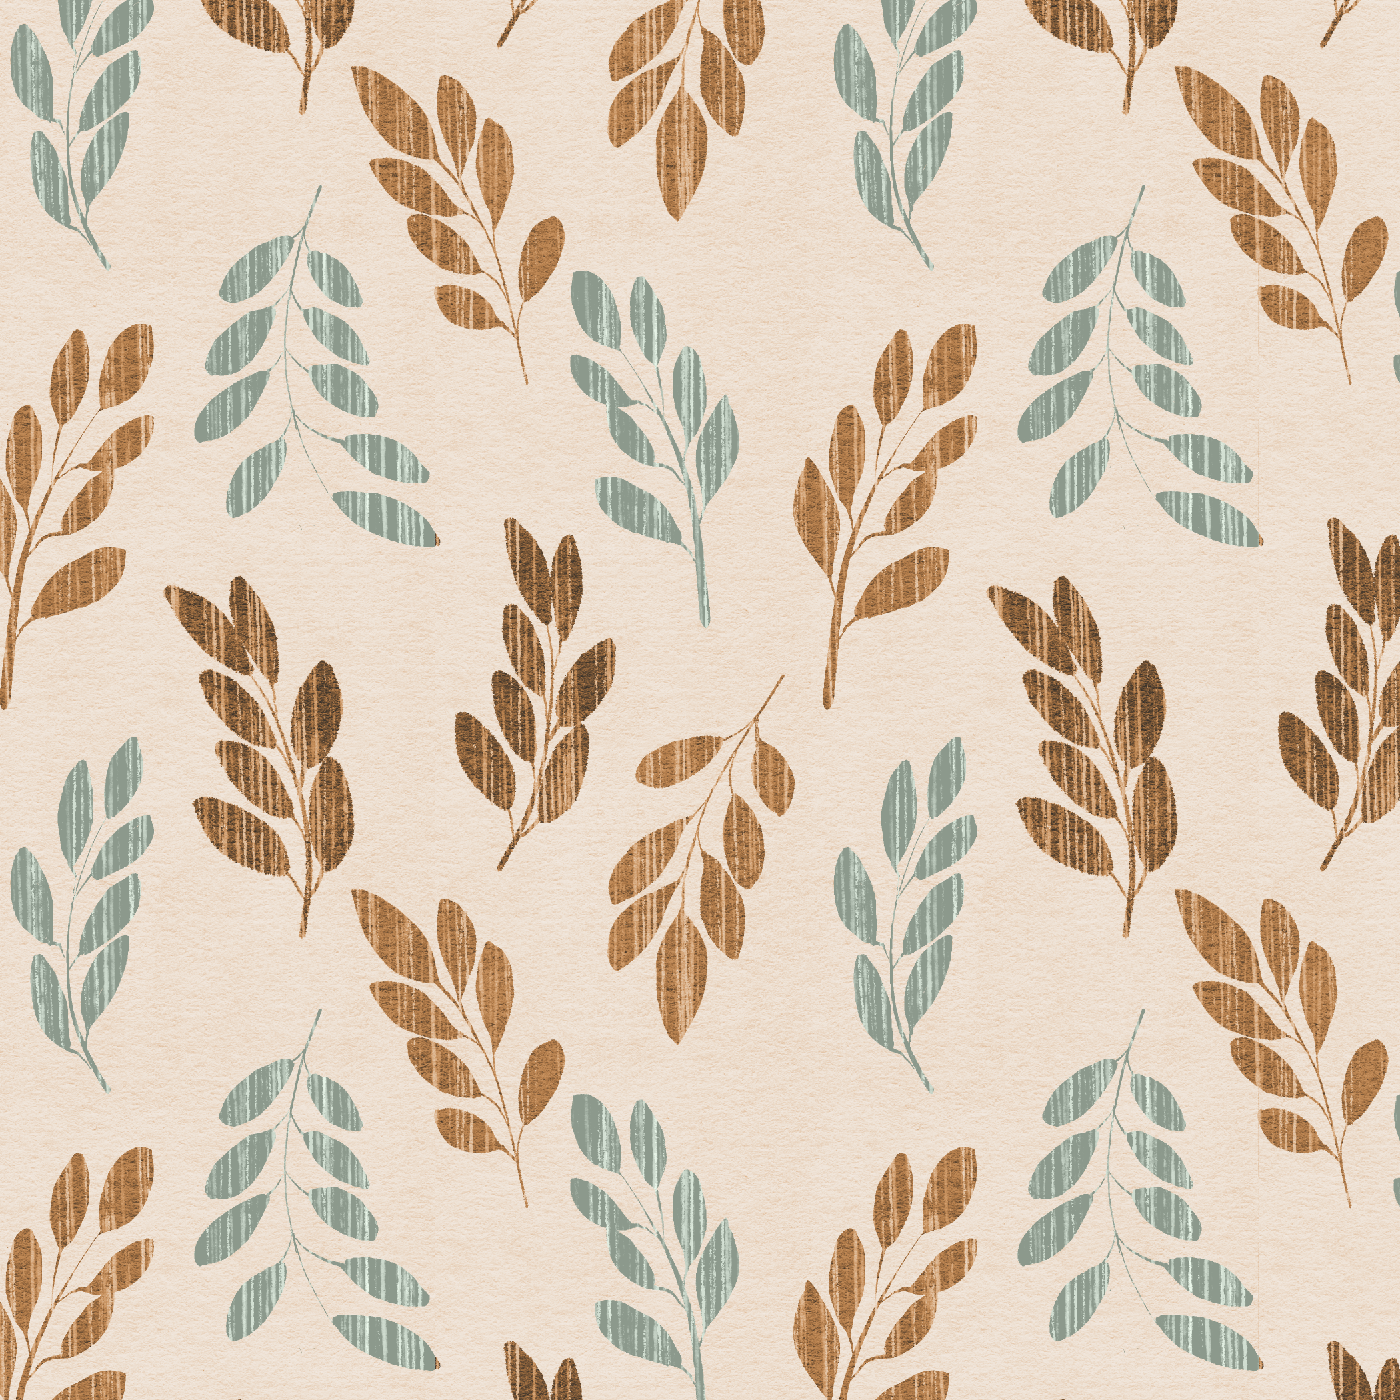 Janet_Hild.surface pattern design.leaf layout